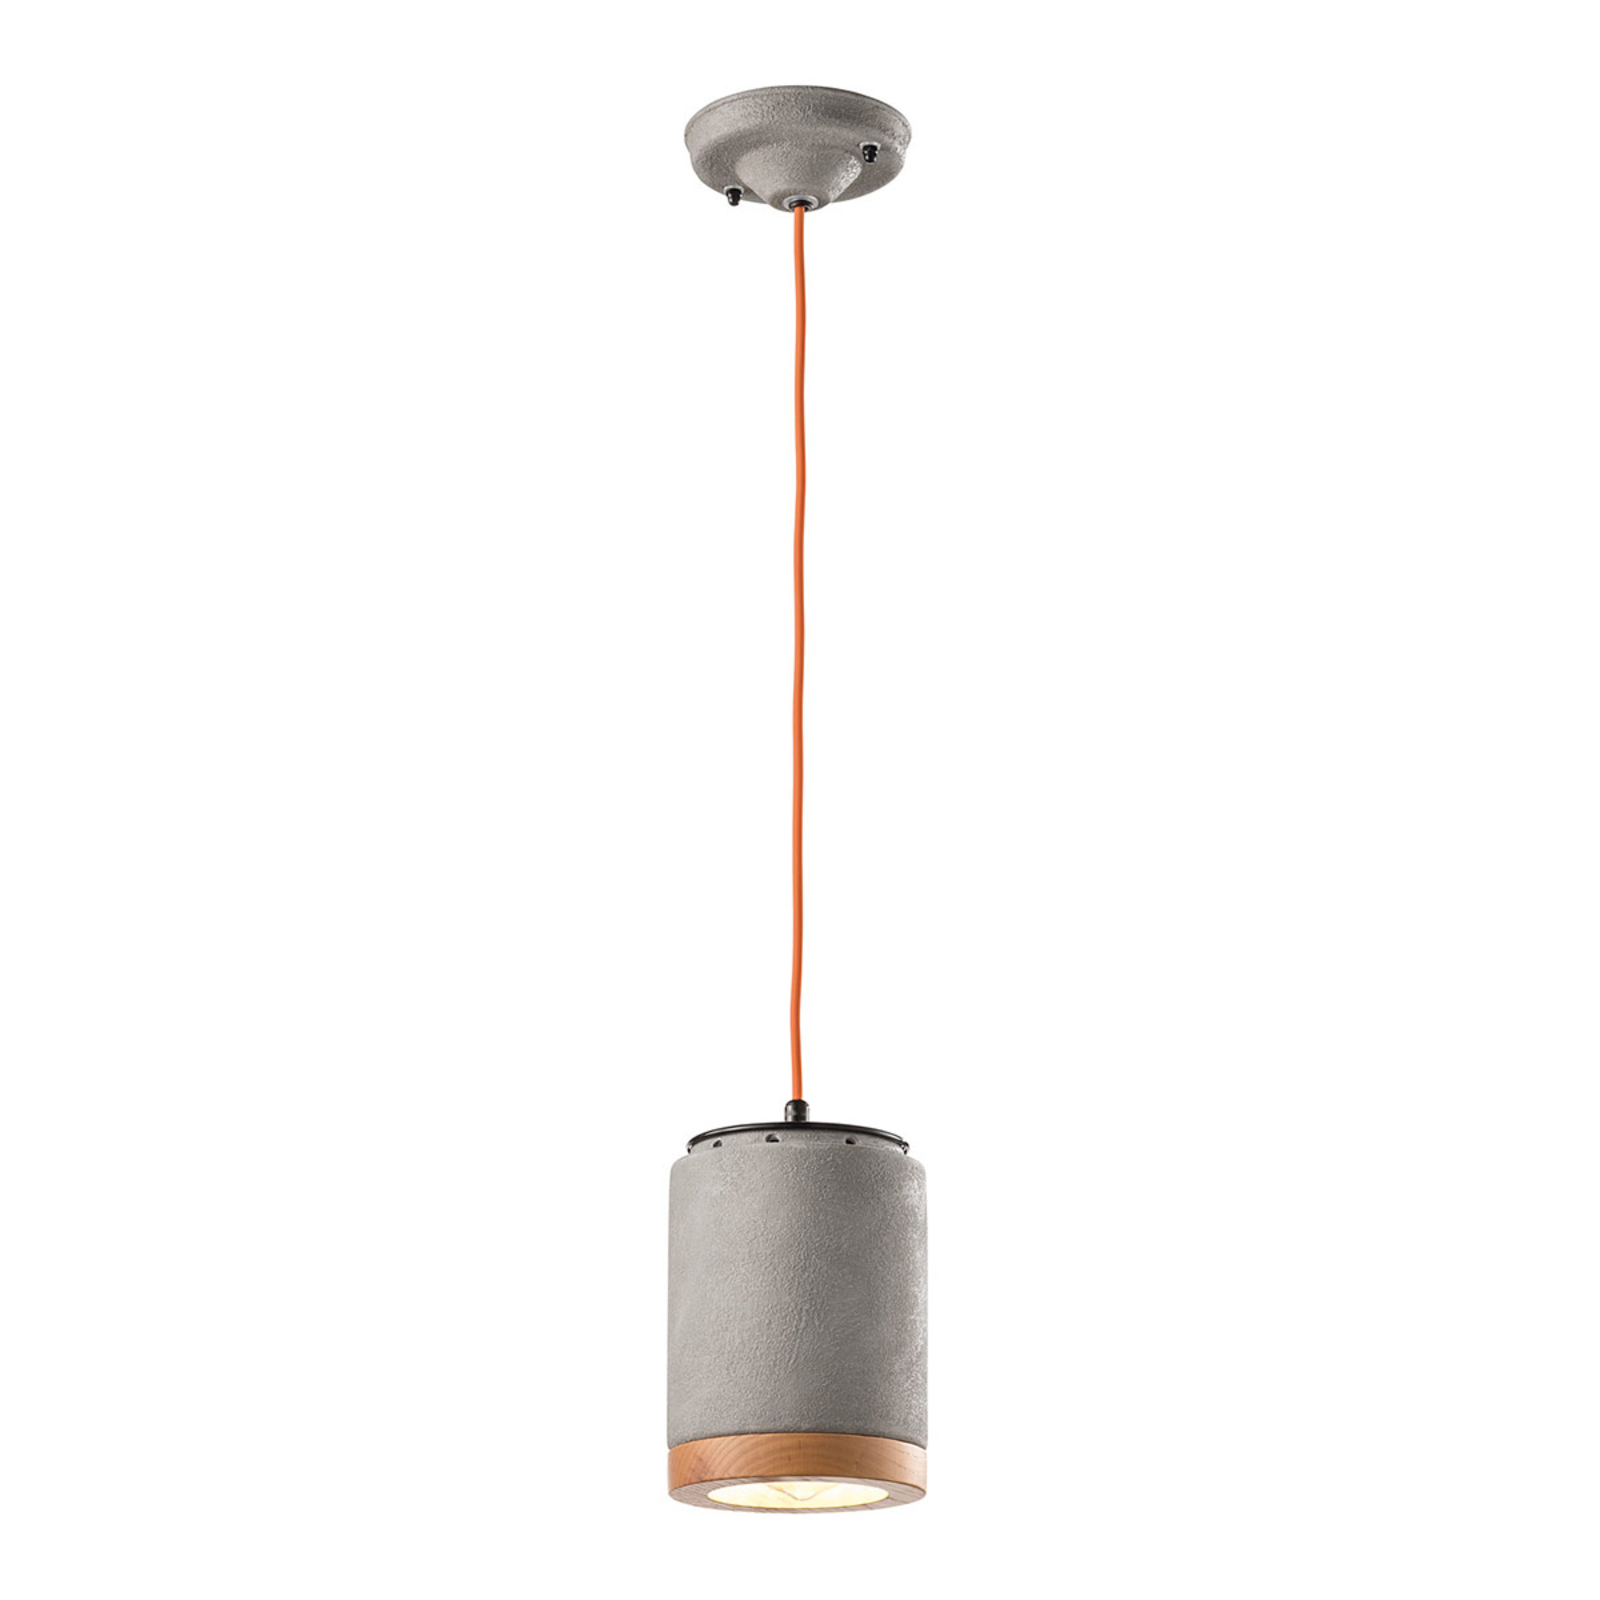 C988 lámpara colgante de cemento de estilo escandinavo